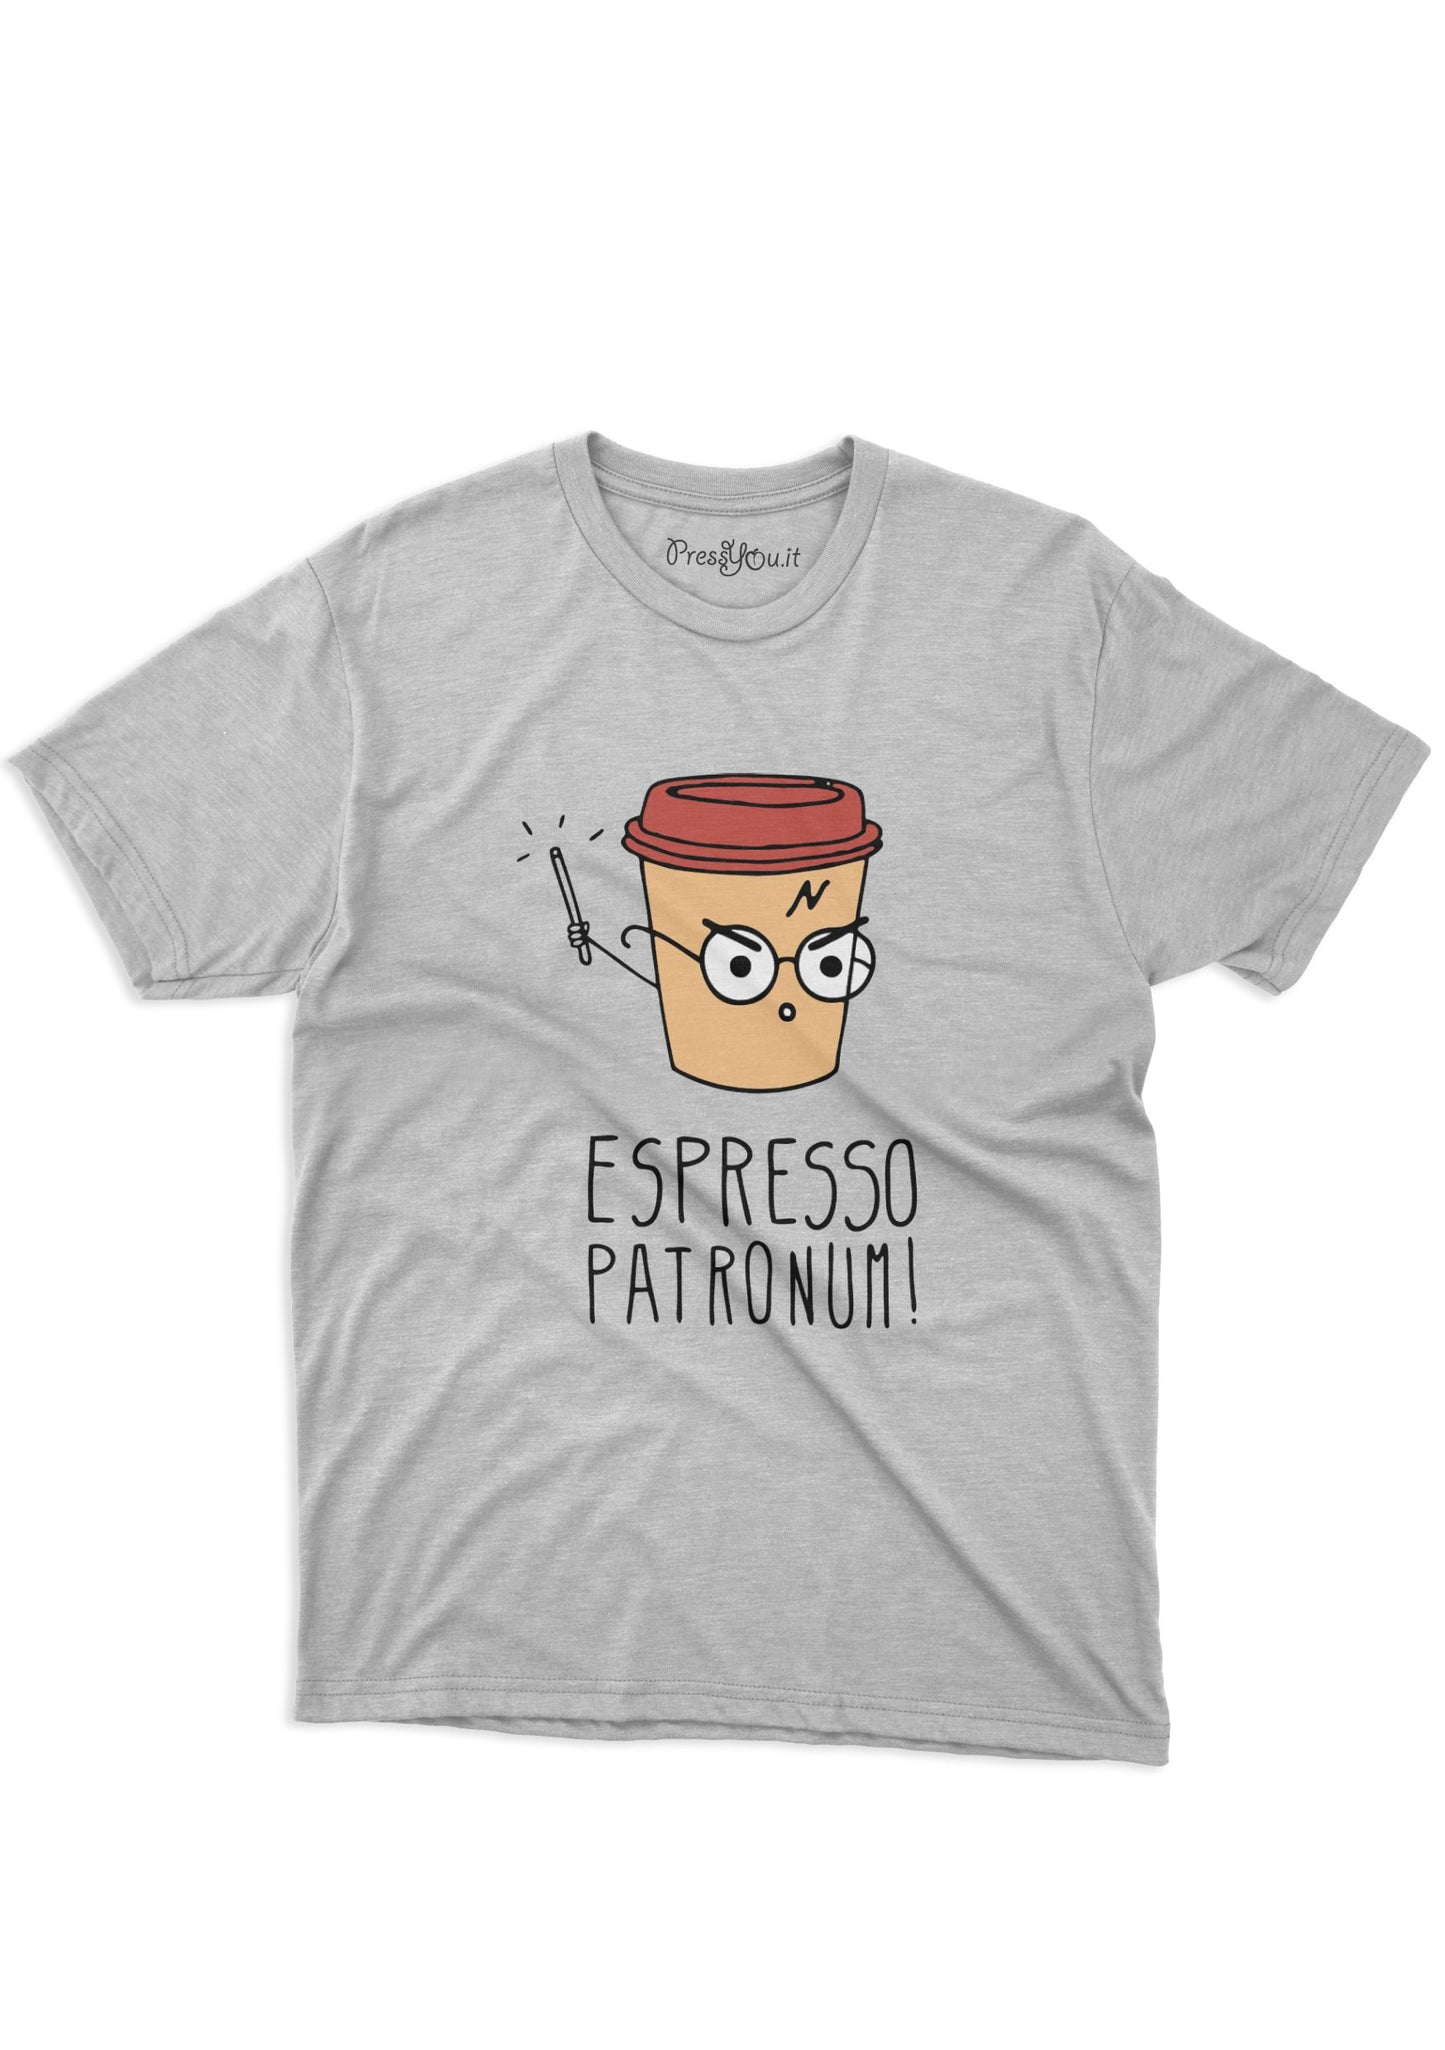 harry espresso patronum t-shirt